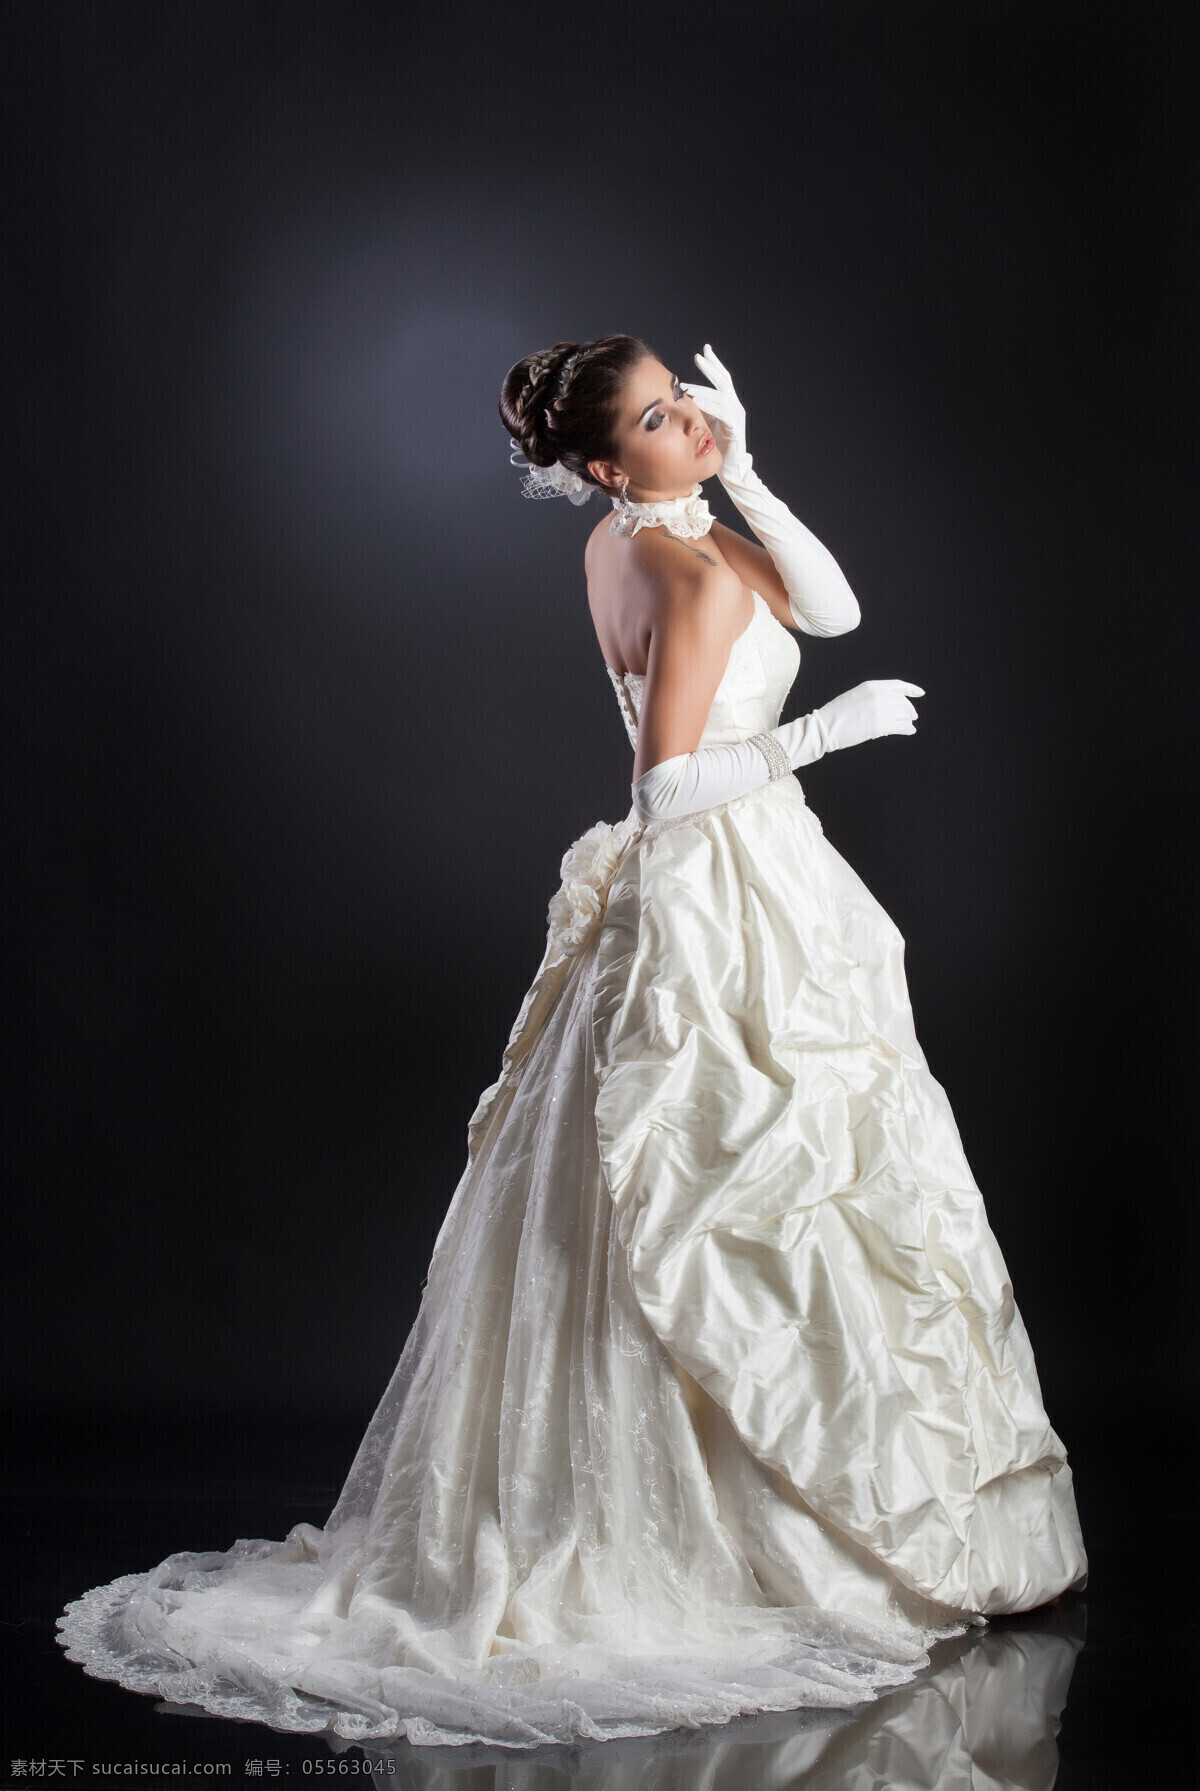 外国 新娘 女人 外国女人 婚纱 礼服 情侣图片 人物图片